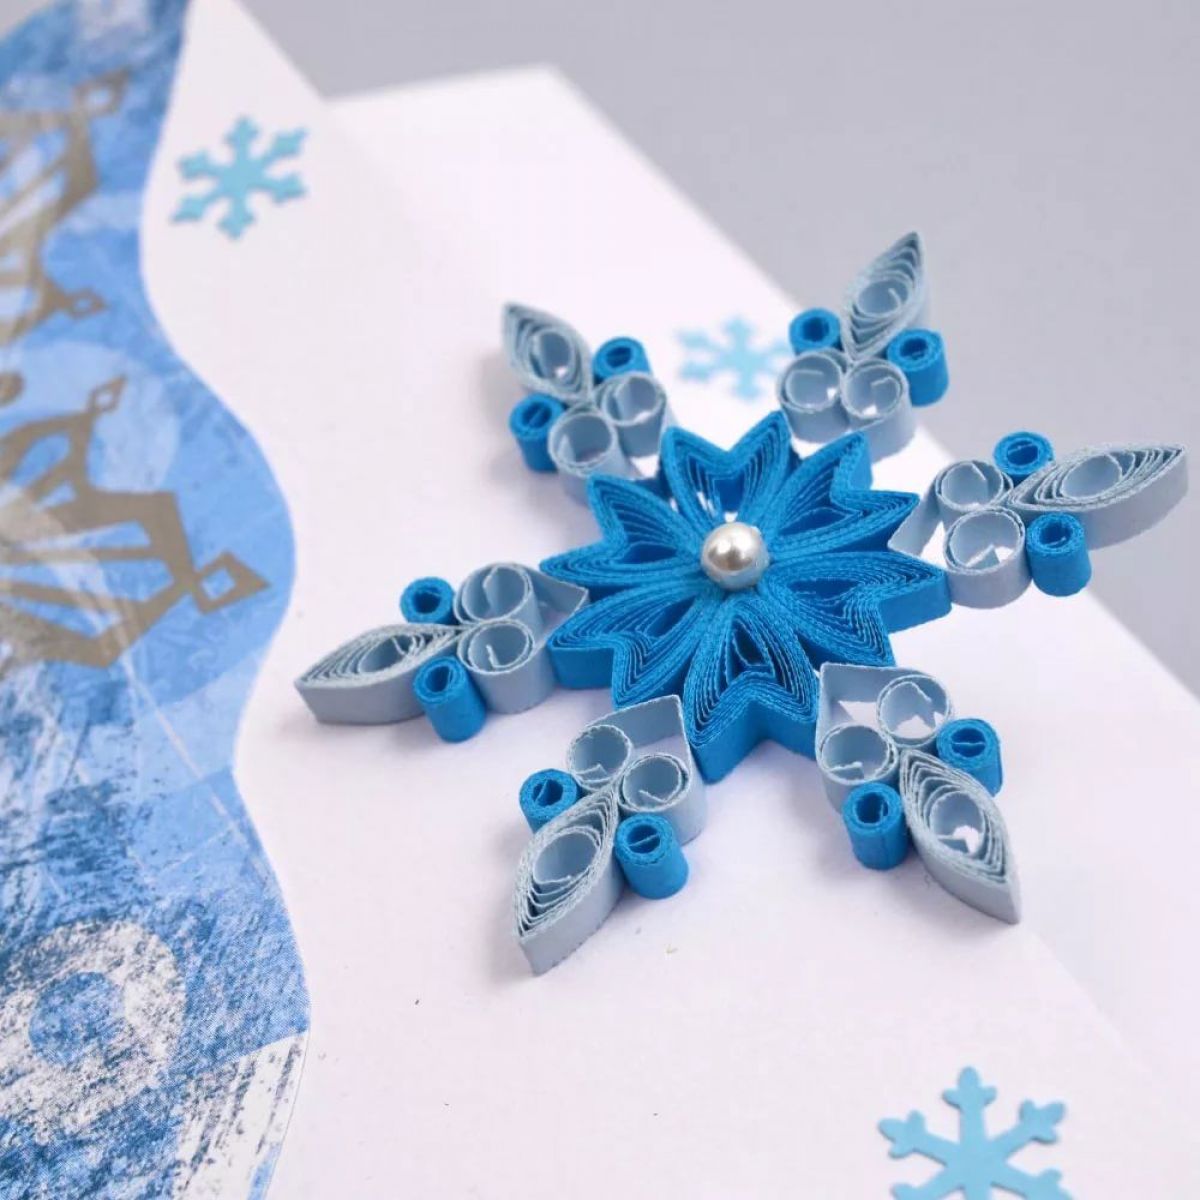 Новогодние снежинки - создаем атмосферу волшебной сказки в вашем доме вместе с kormstroytorg.ru